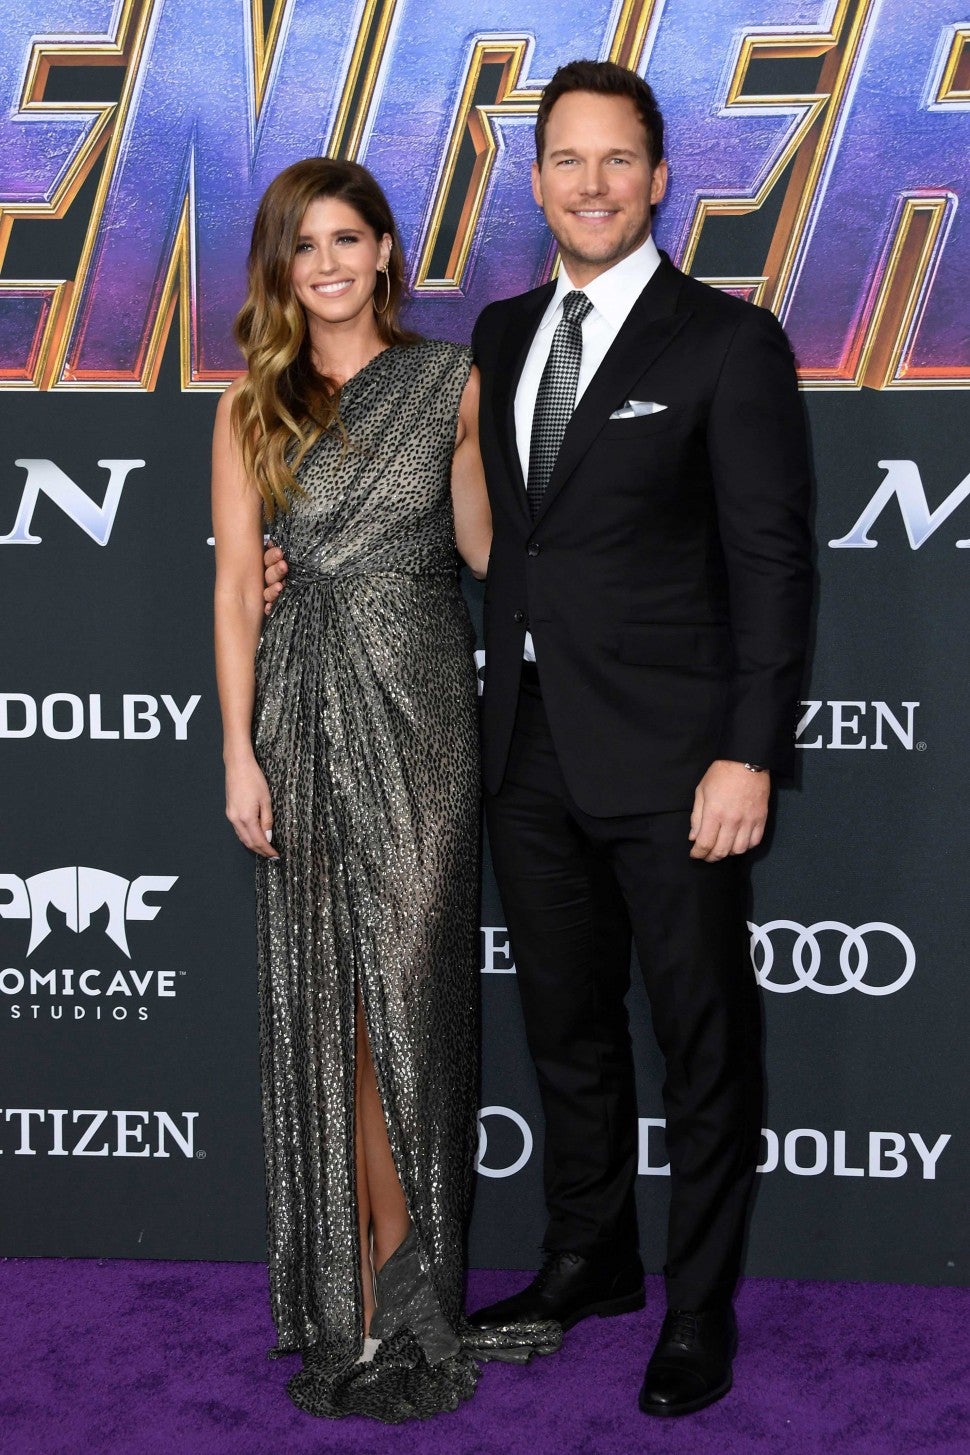 Katherine Schwarzenegger and Chris Pratt at the 'Avengers: Endgame' Premiere in LA on April 22.